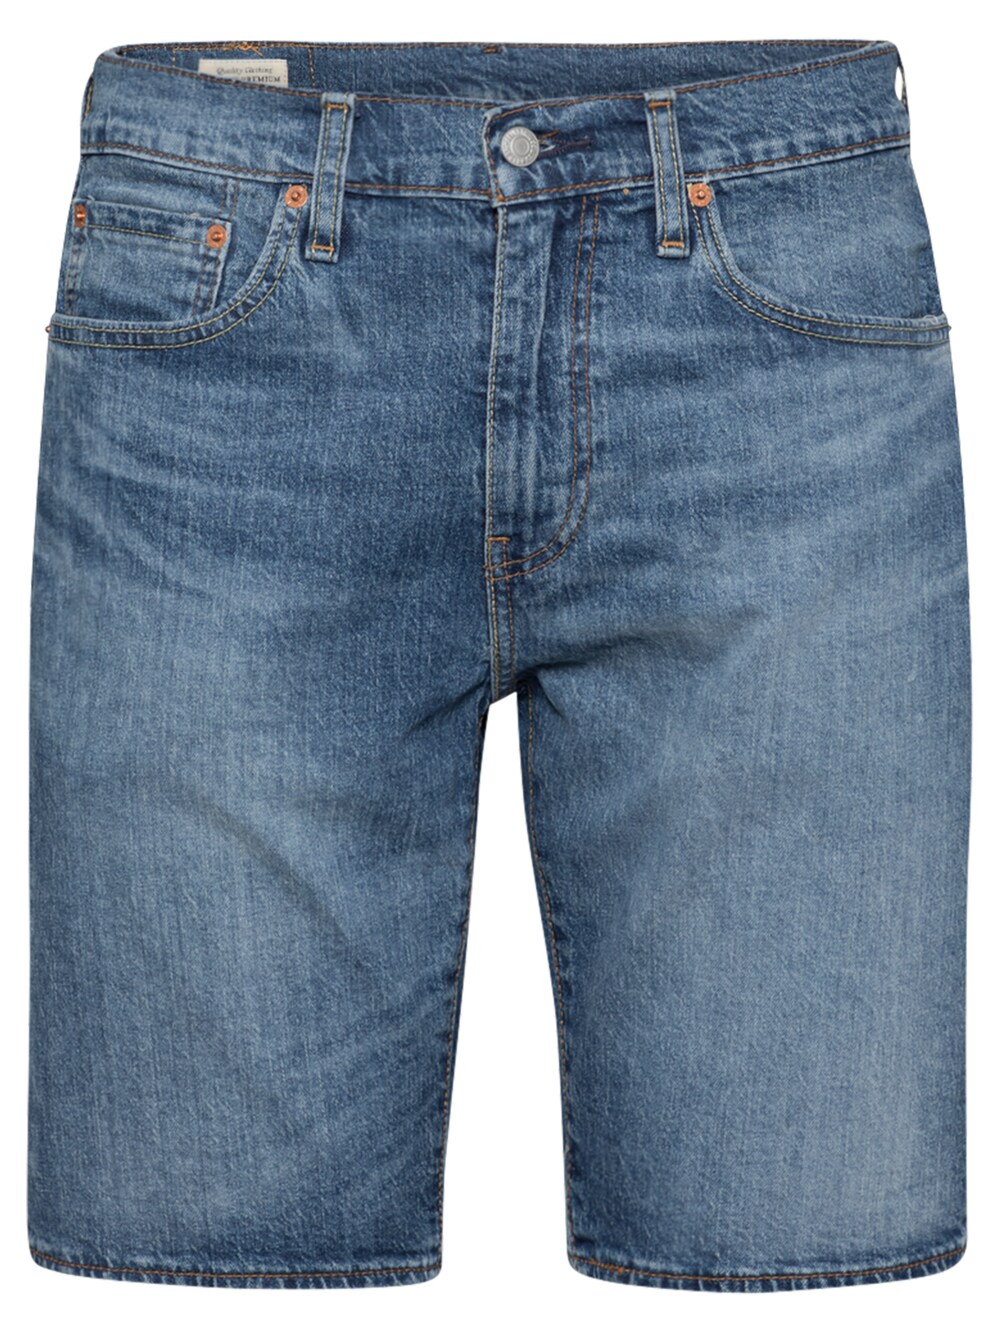 Обычные джинсы LEVIS 405, синий